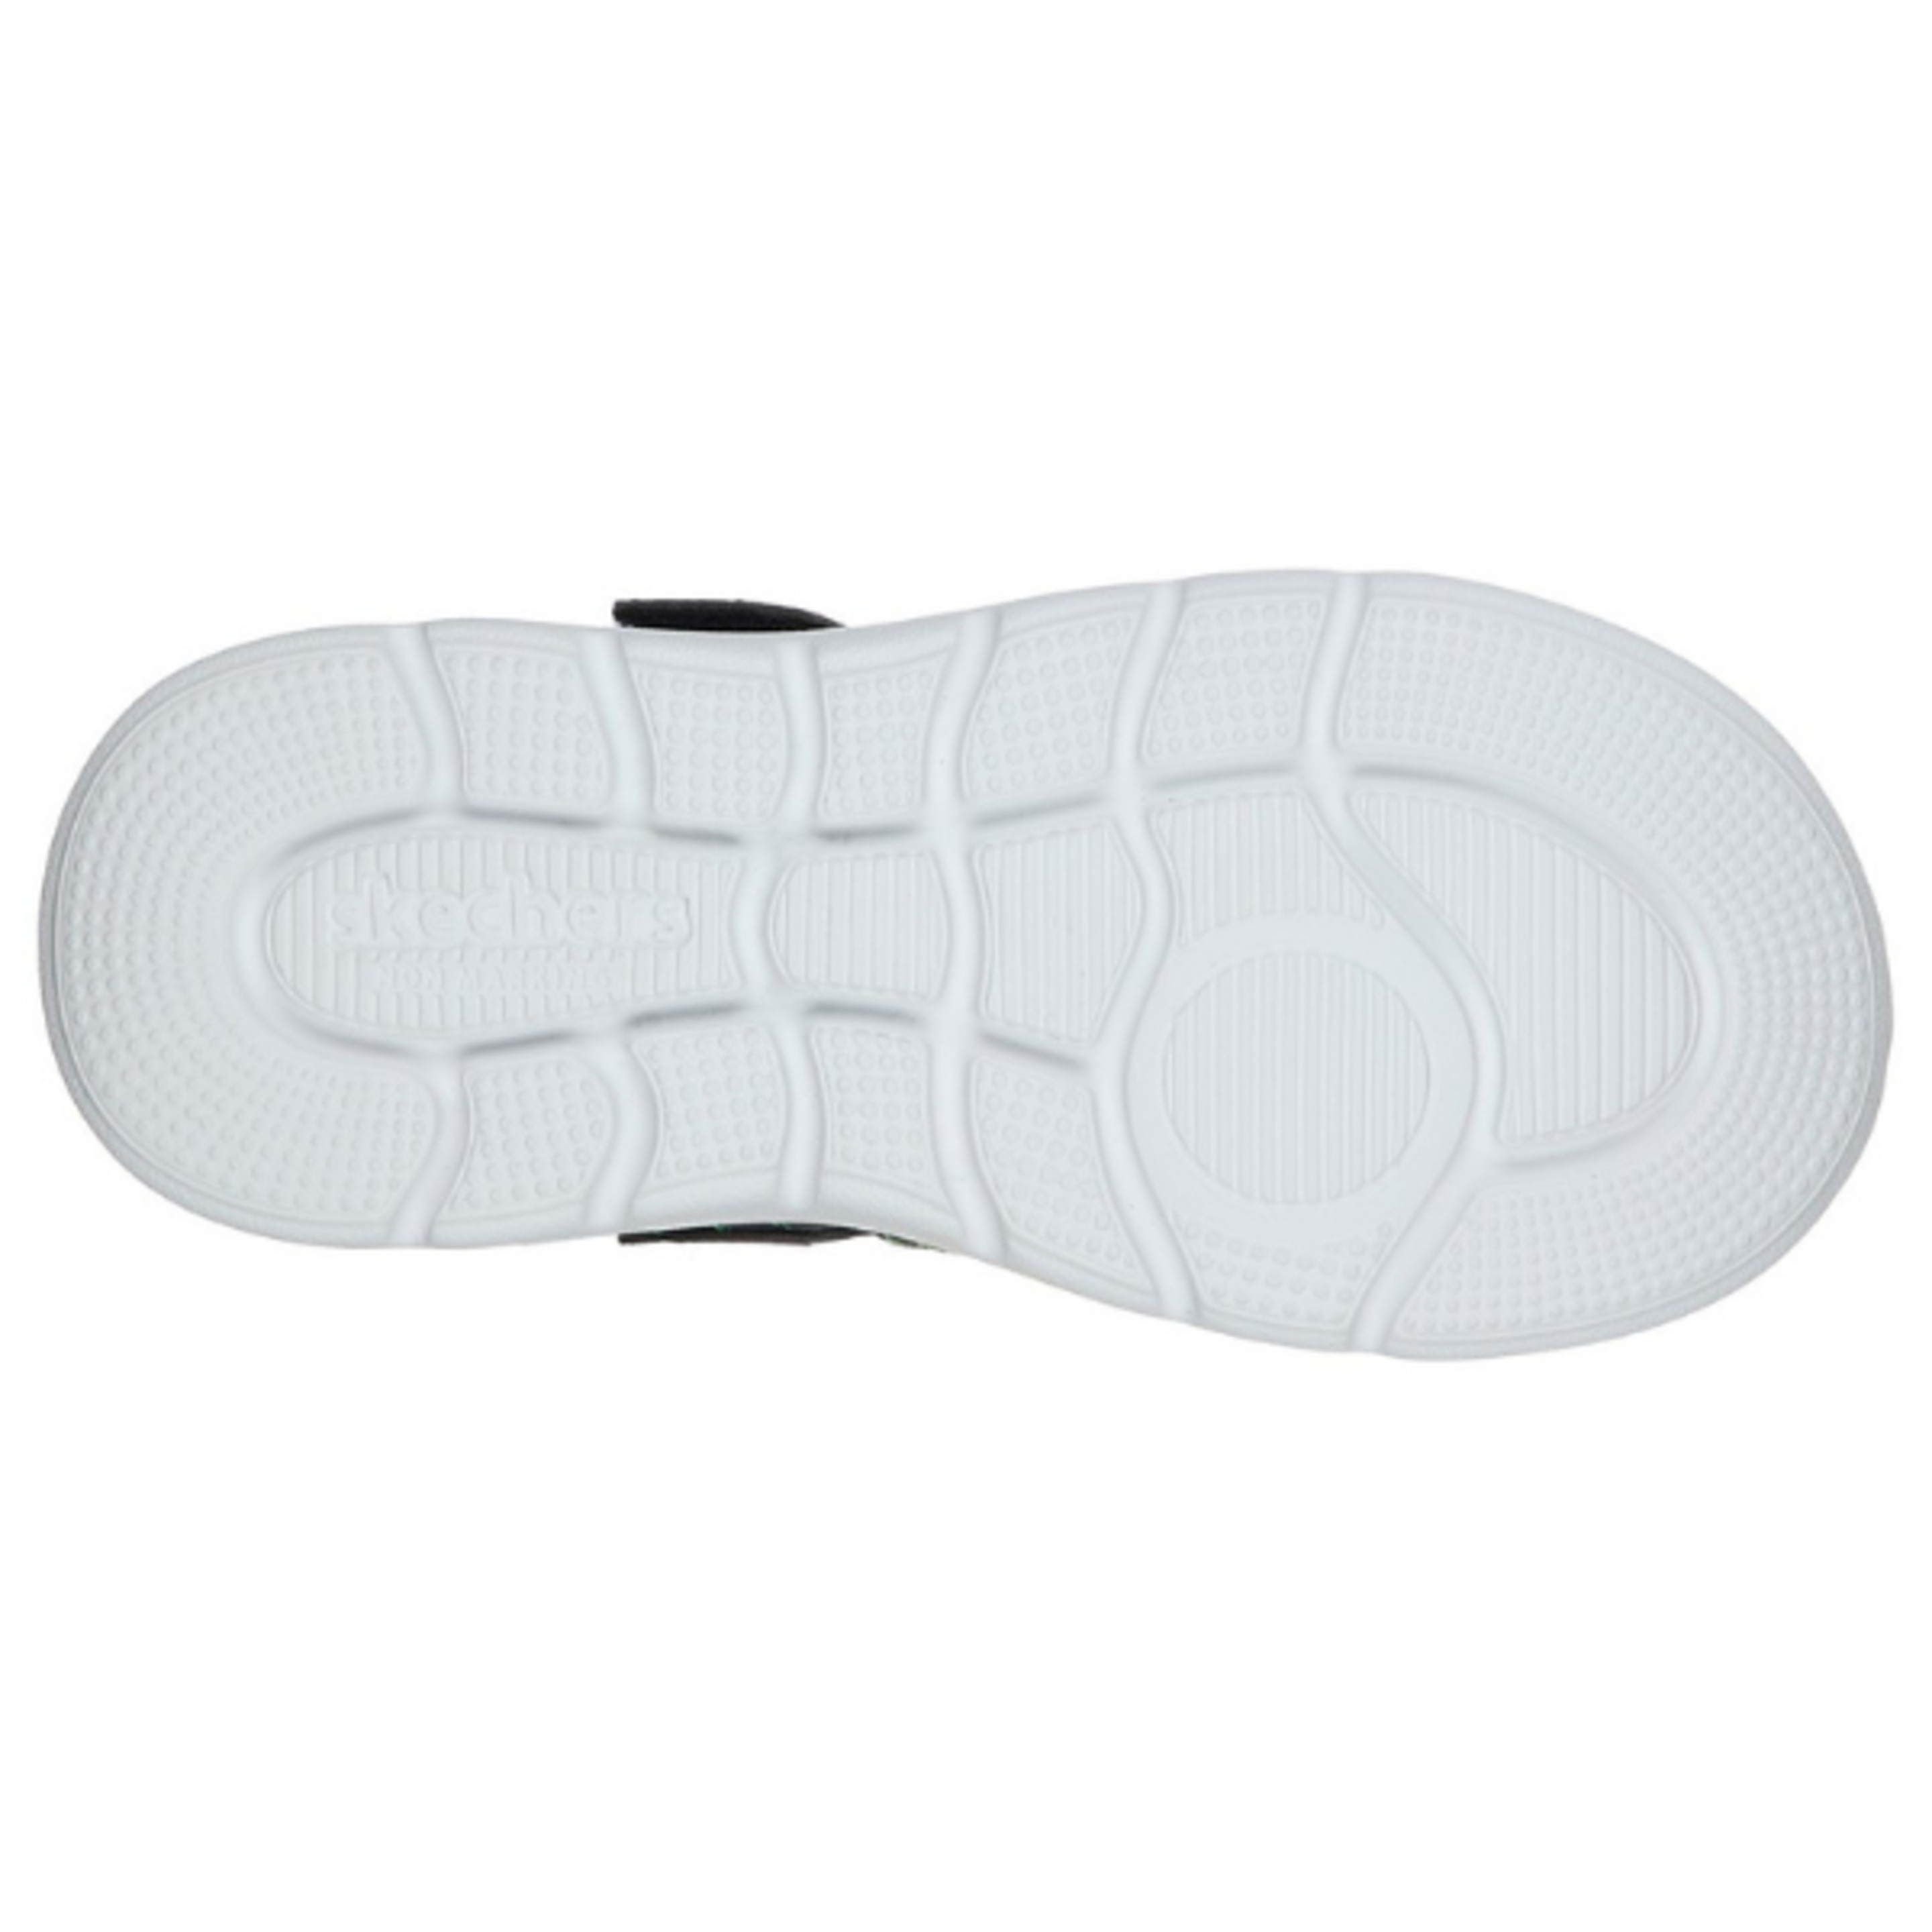 Skechers C-flex Sandal 2.0- Heat -blast. Navy/lime. 400041l/nvlm.